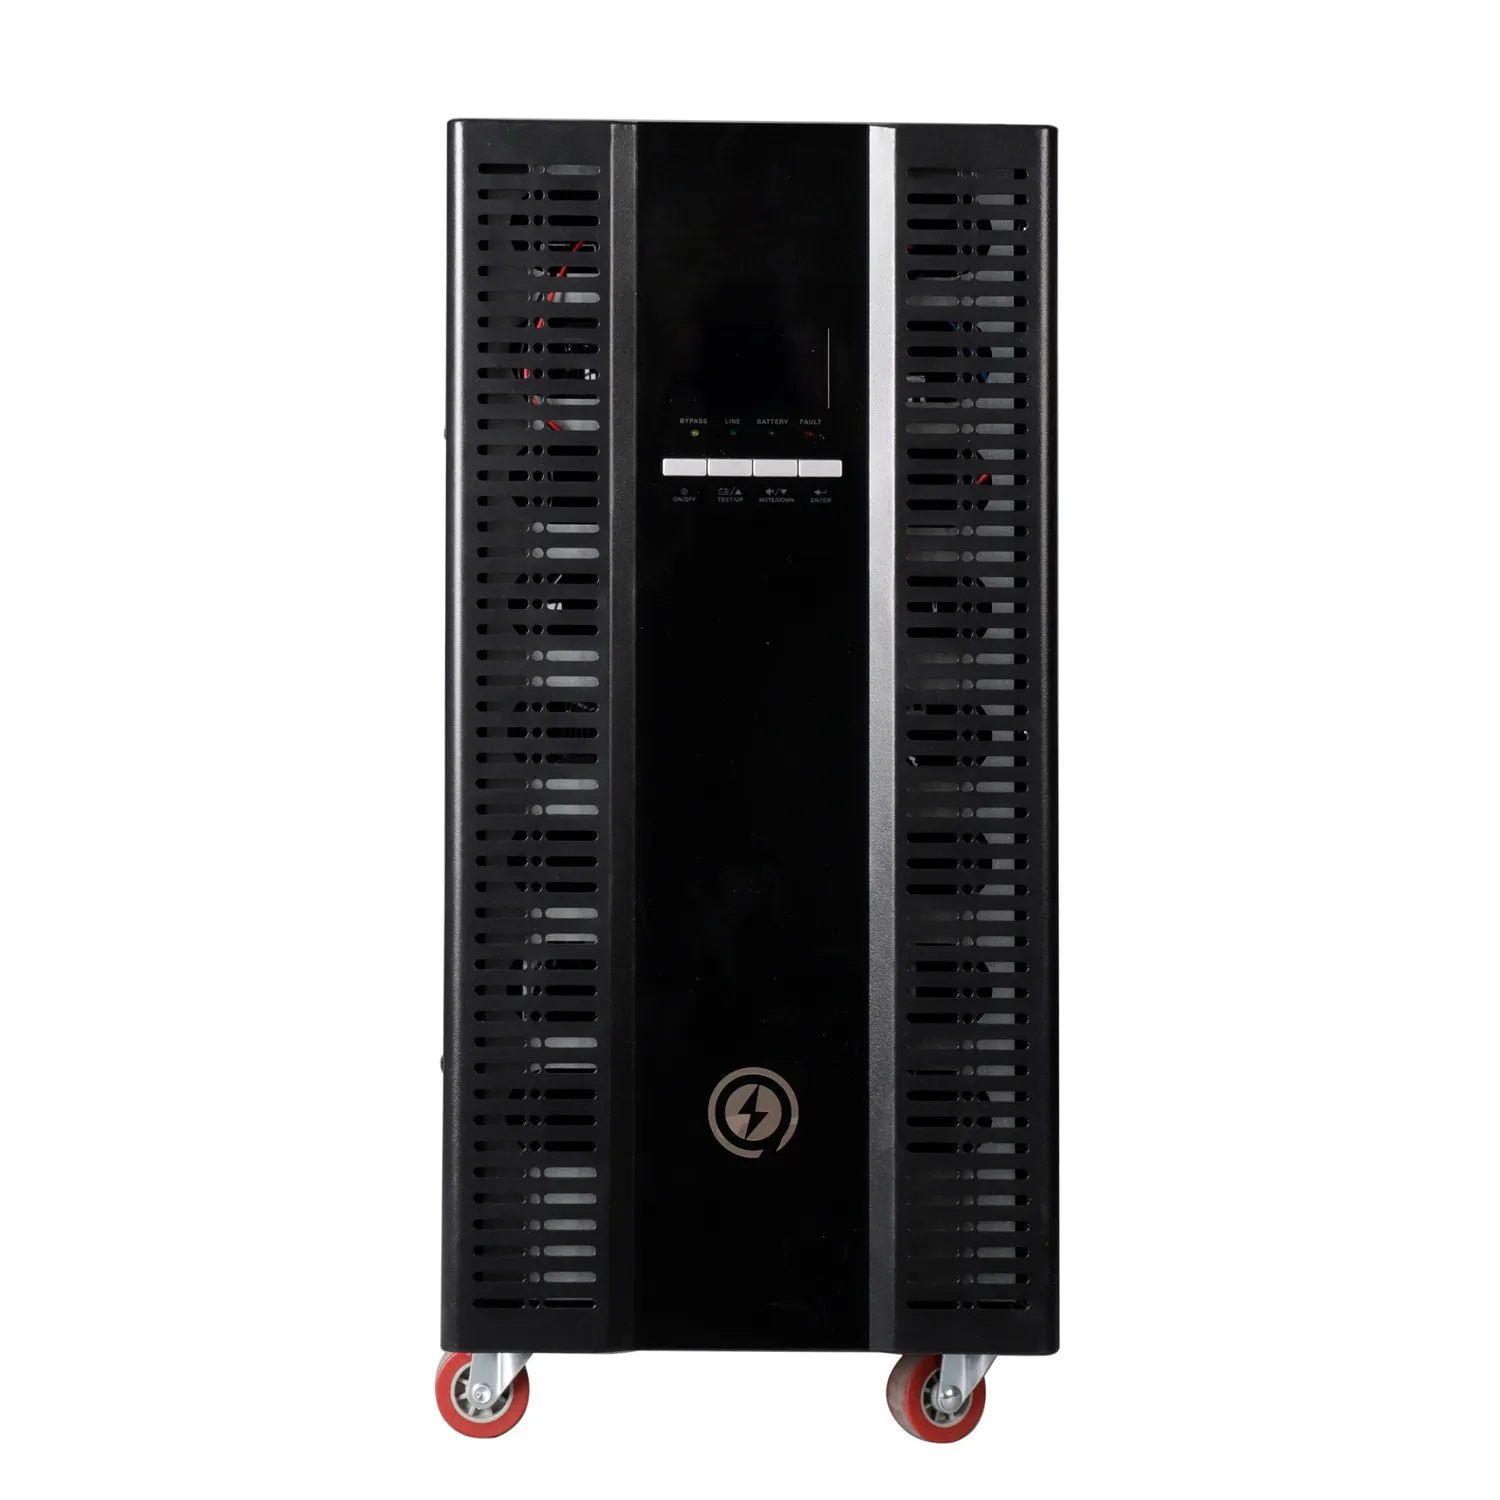 Giant power online UPS, techno power systemen 220/230/240vac met ingebouwde batterij of externe batterij optie